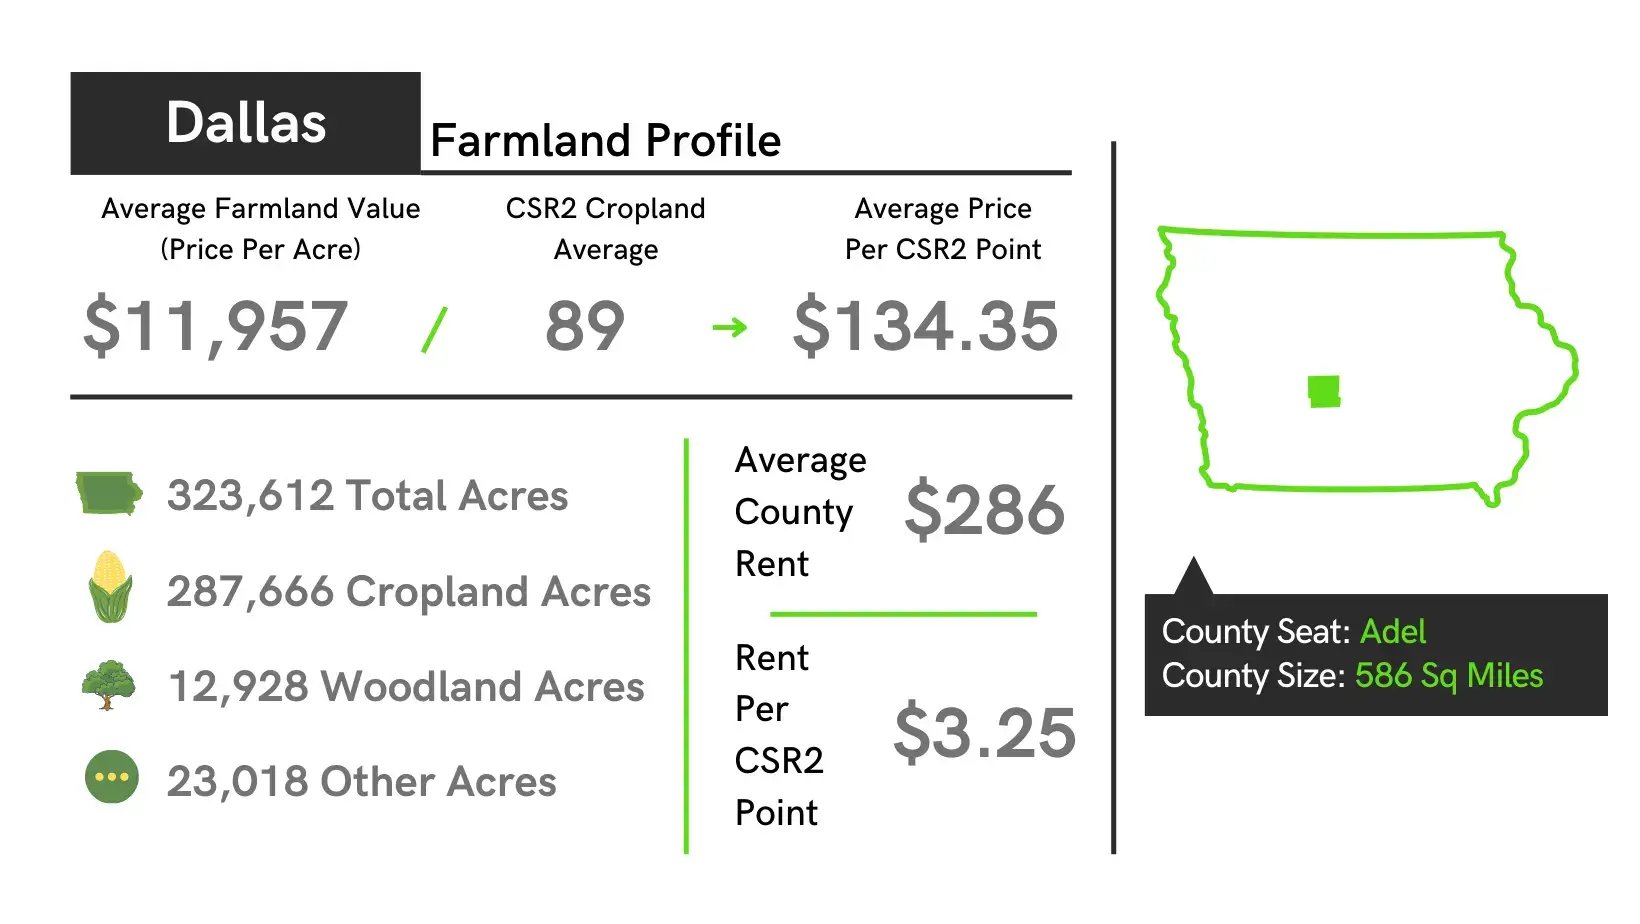 Dallas County Farmland Profile